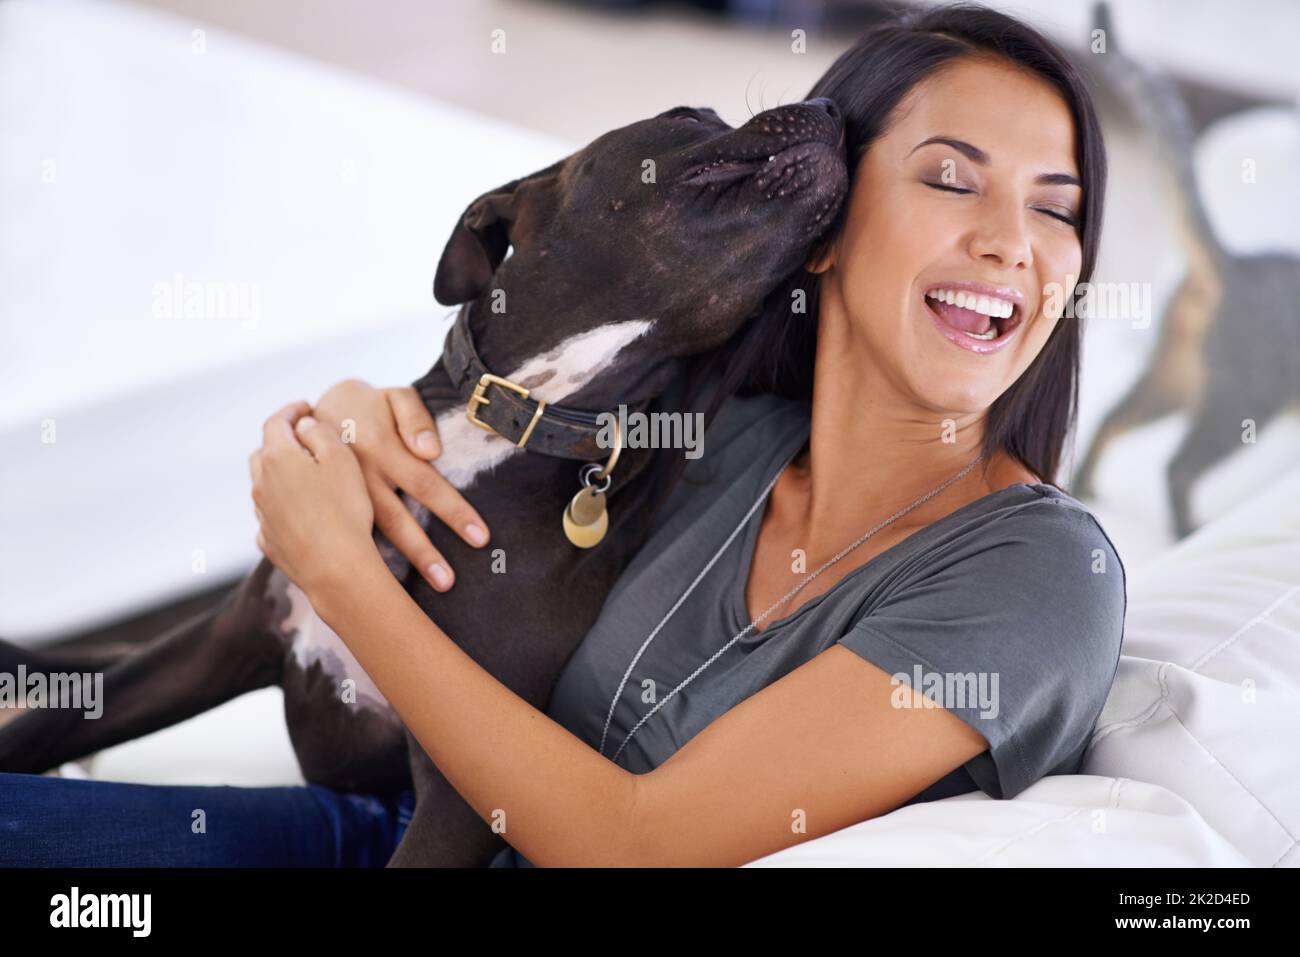 Compagno canino. Scatto di una giovane donna attraente godendo una coccola con il suo cane a casa. Foto Stock